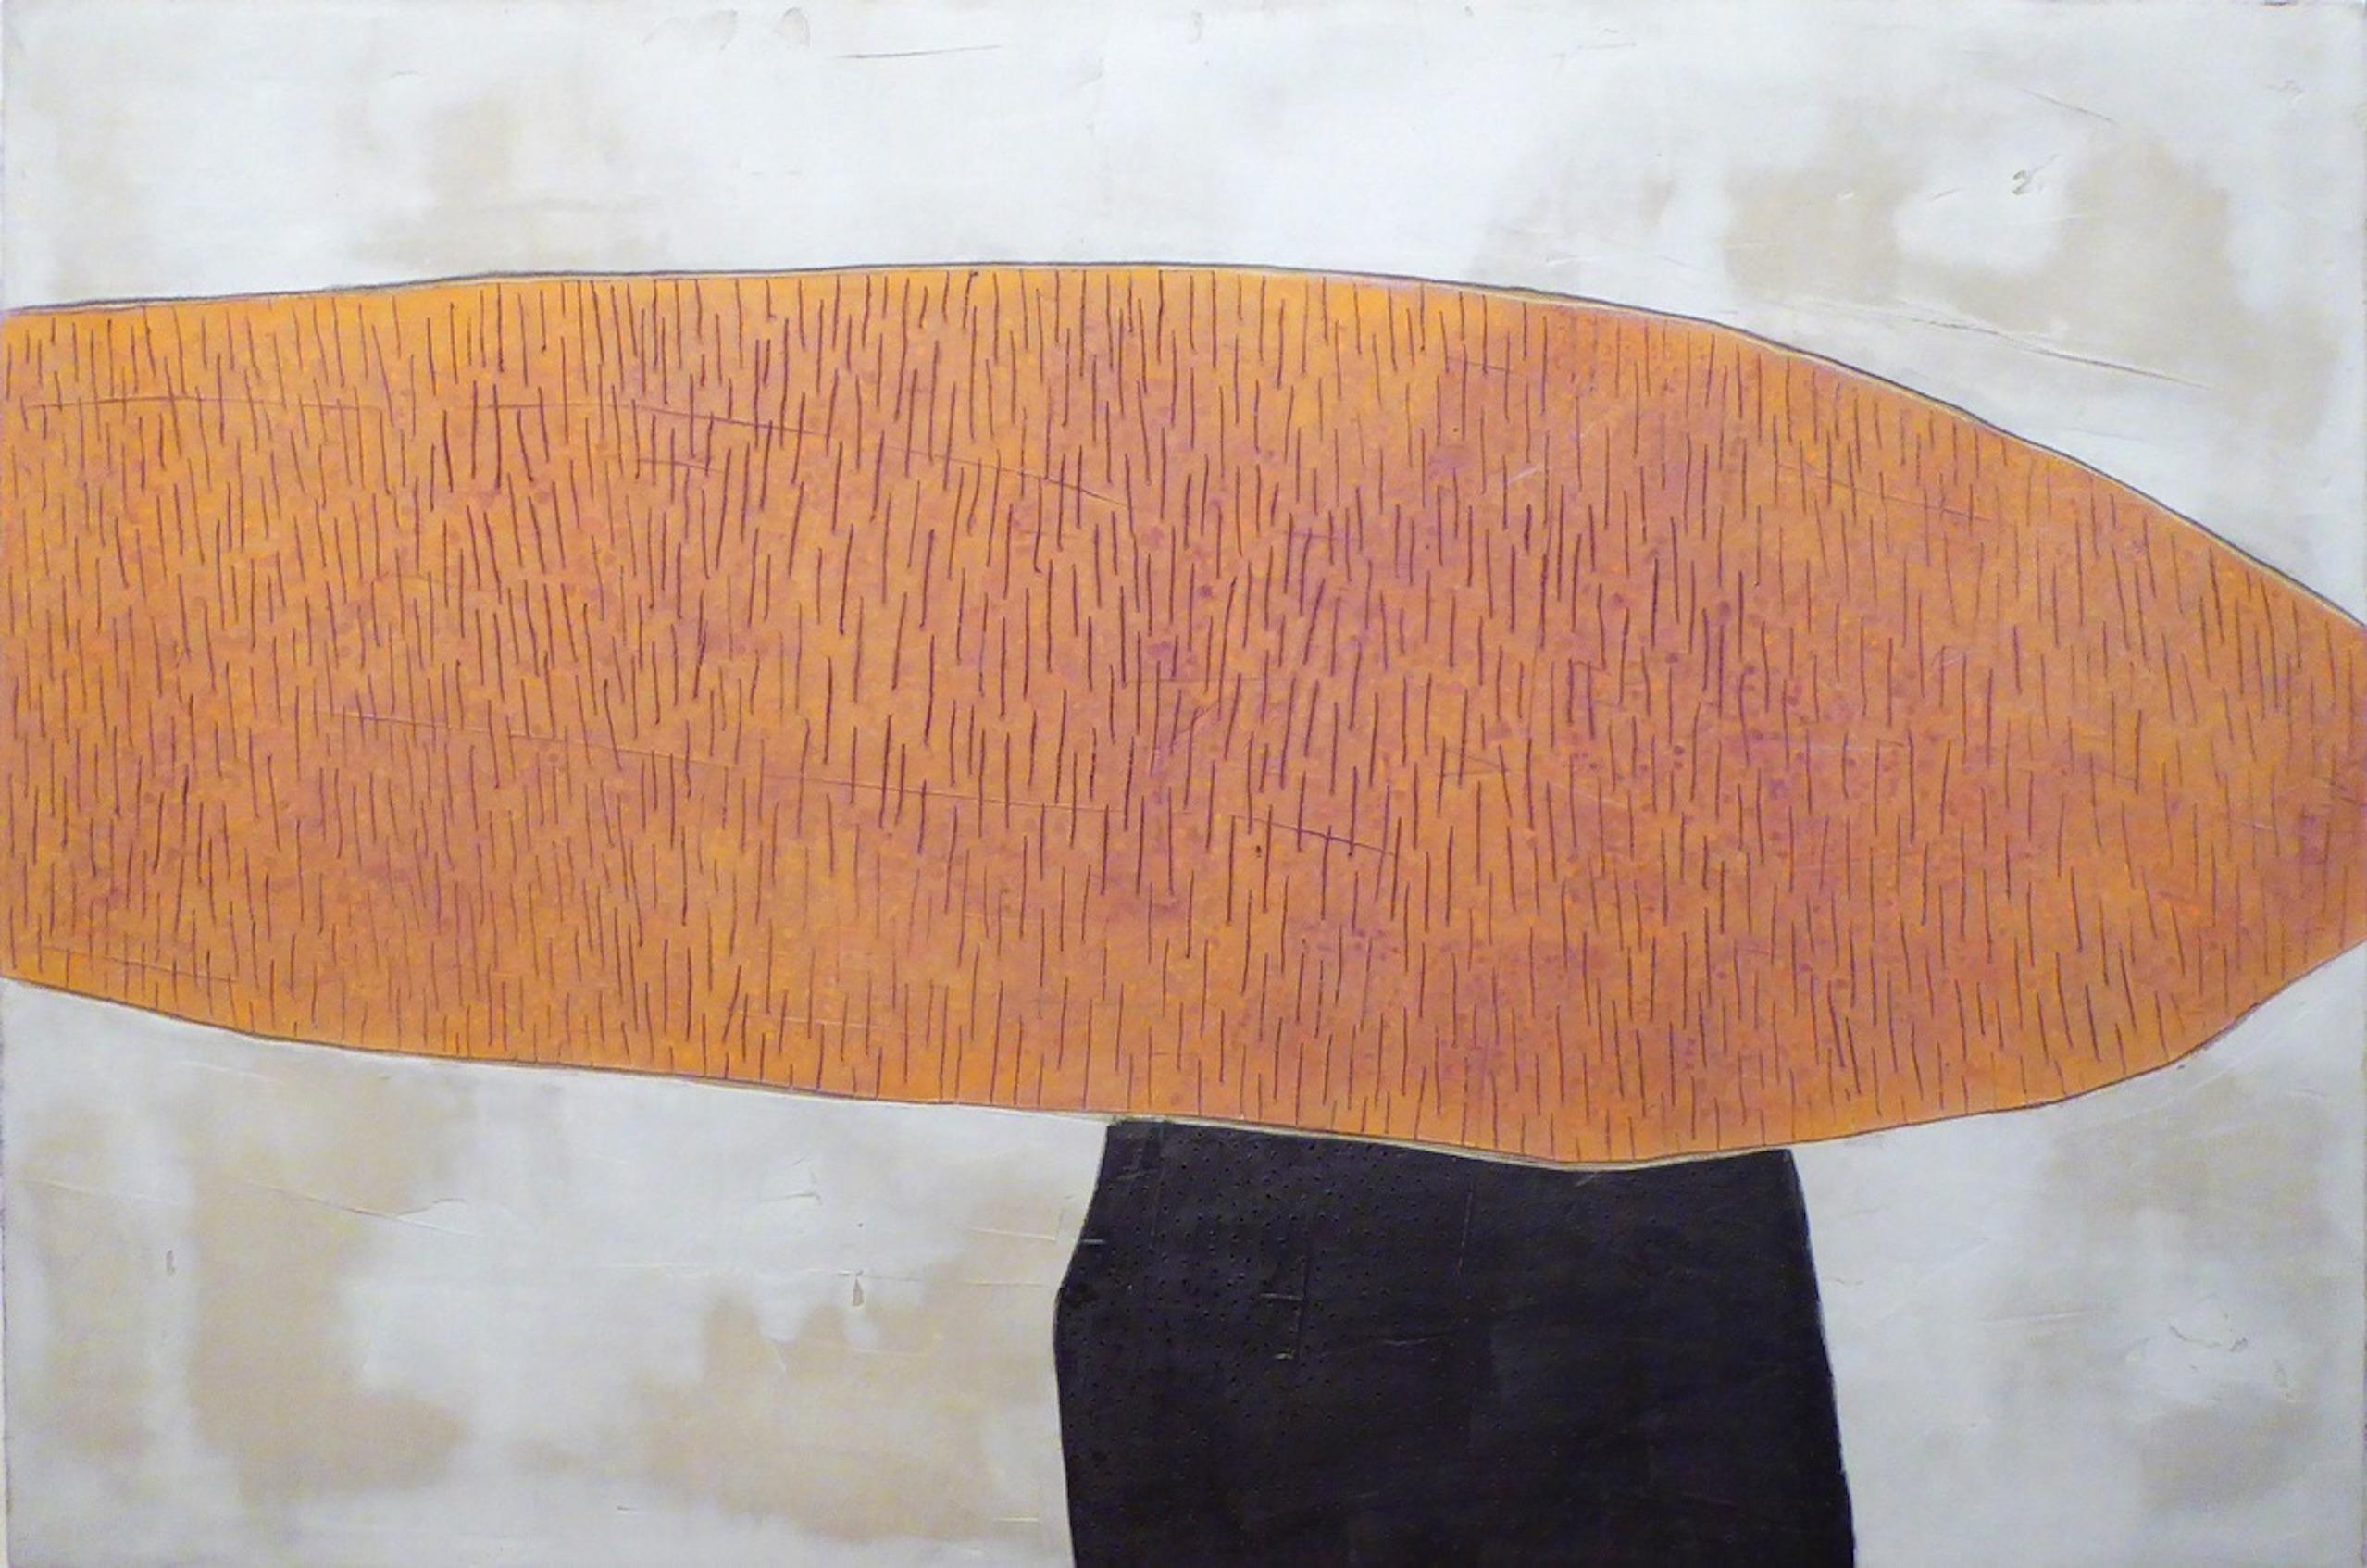 Núria Guinovart Abstract Painting - Malgrat Tot, Subtilesa - 21st Century, Abstract Art, Cement on Wood, Earth Tones